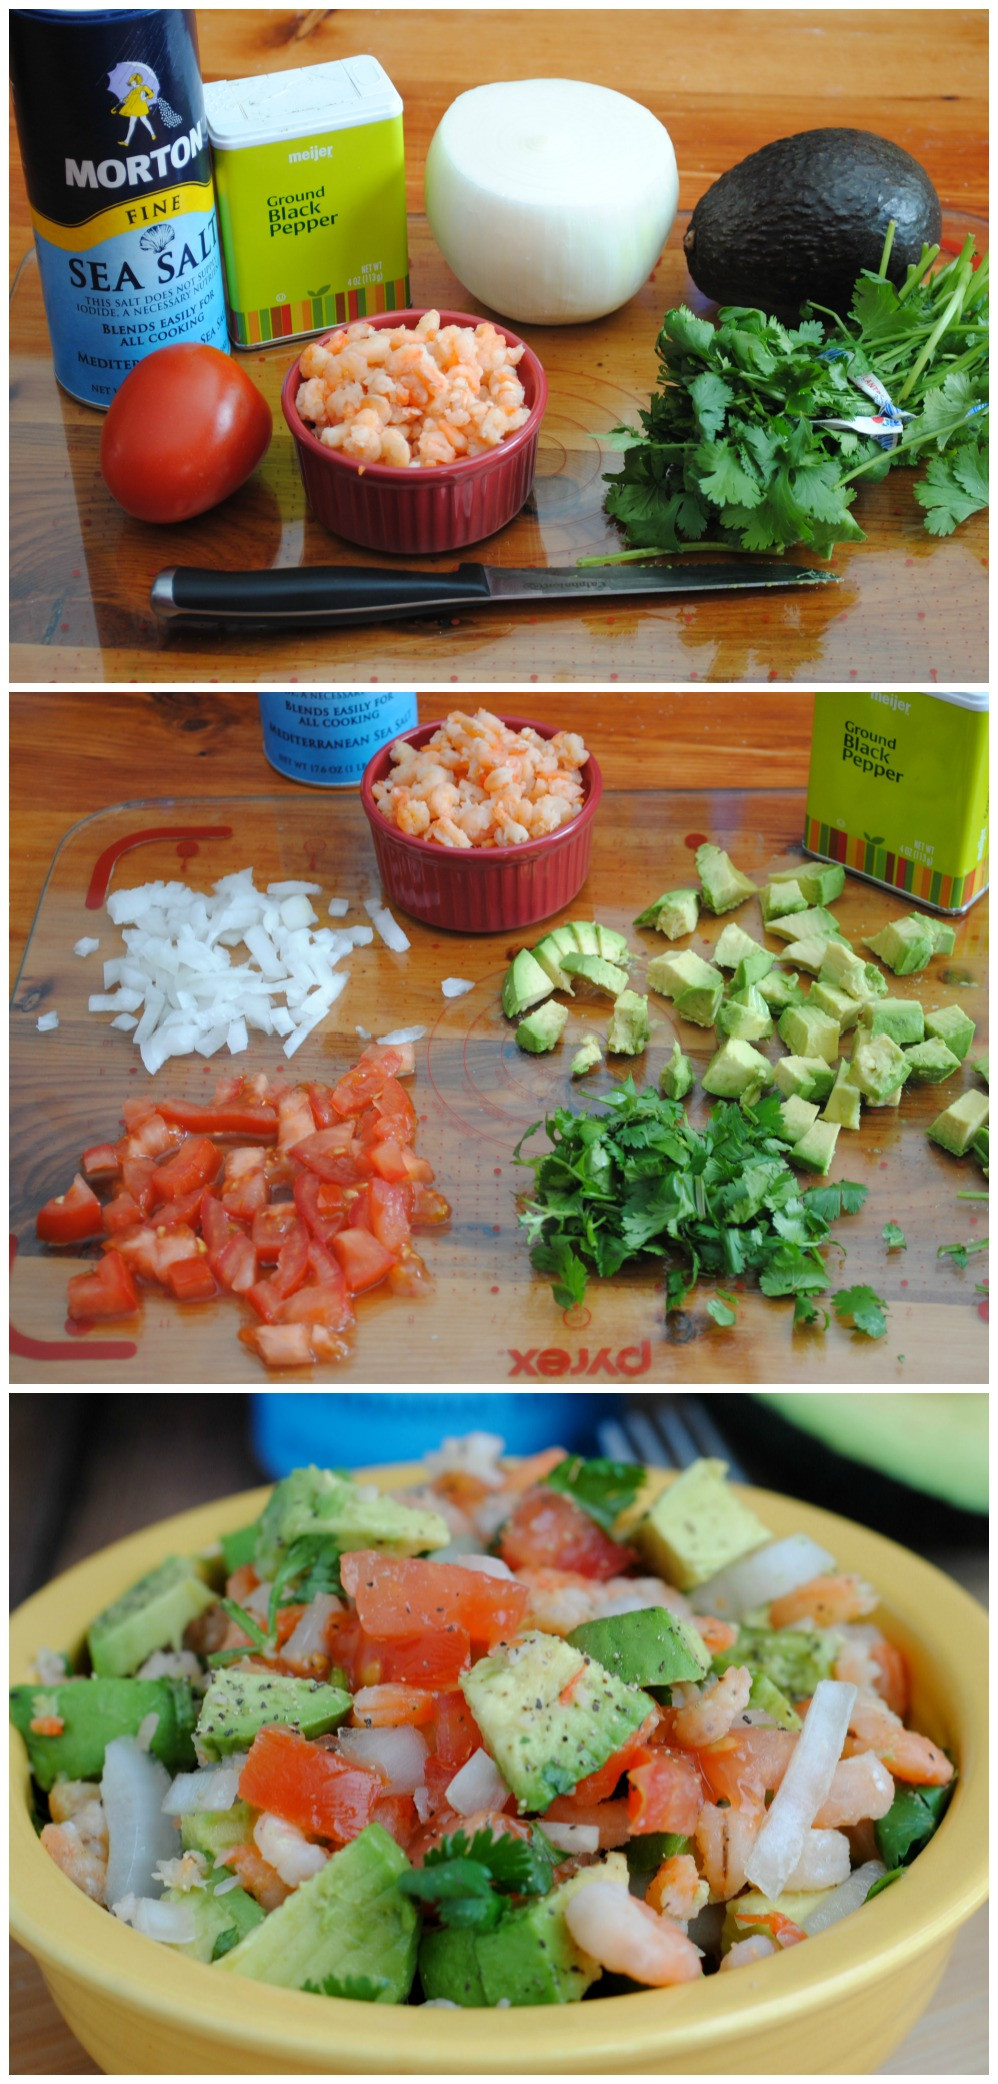 Healthy Easy Salads
 Quick & Healthy Recipe Avocado & Shrimp Salad